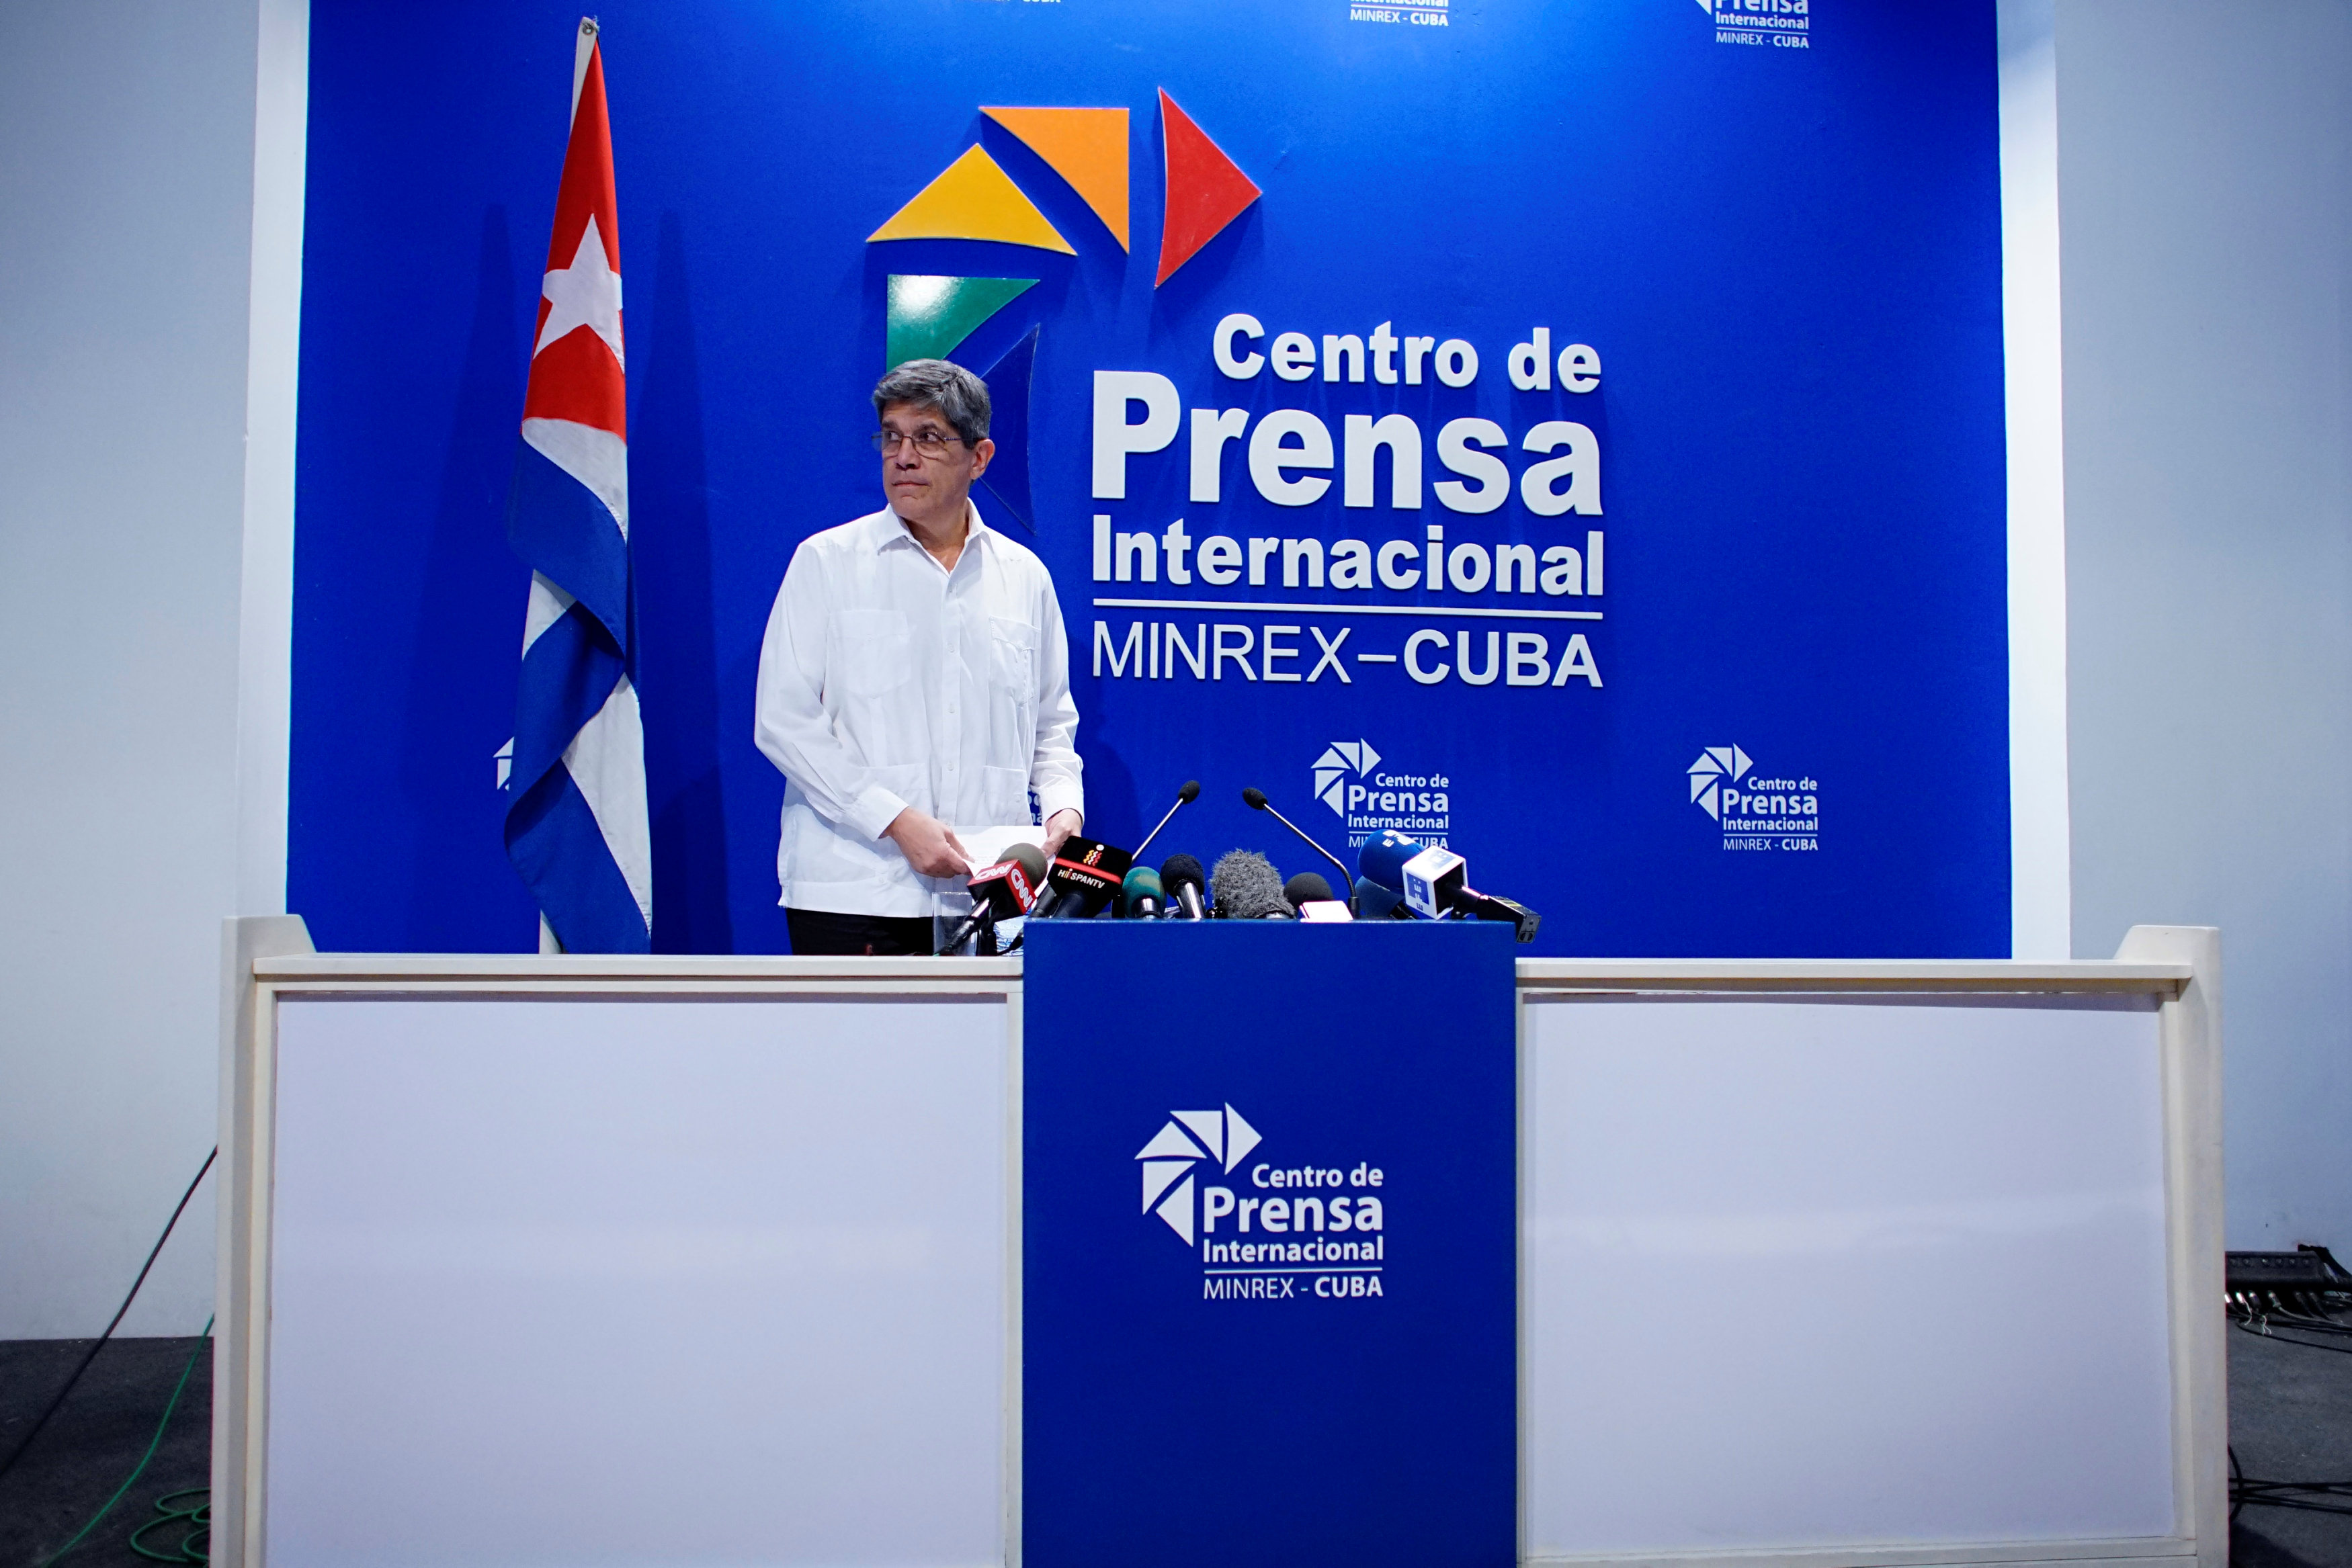 كارلوس فرنانديز دو كوسيو مدير الشؤون الأمريكية فى وزارة خارجية كوبا